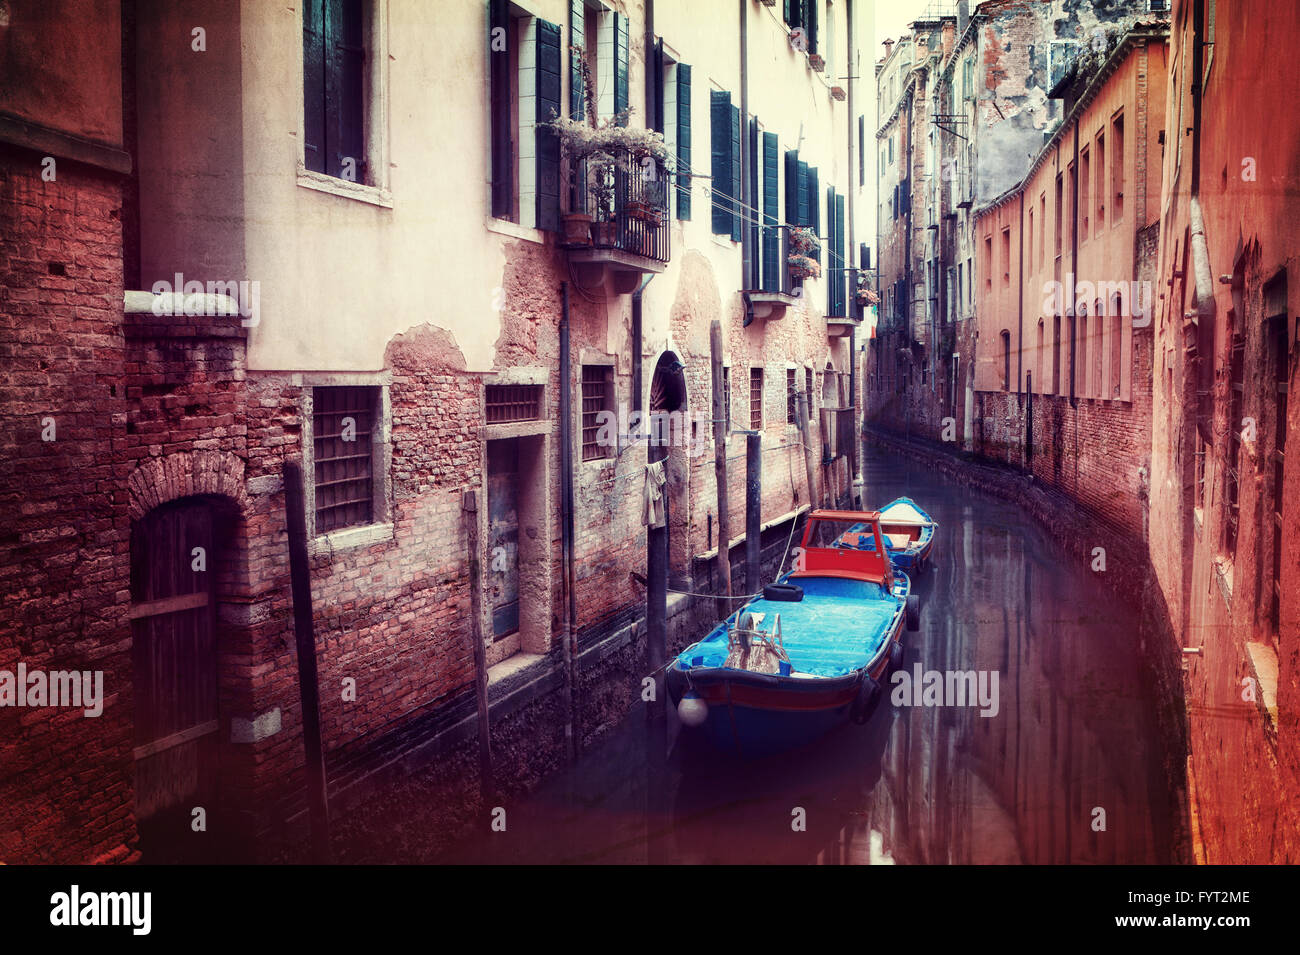 Imagen de estilo retro pequeño canal en Venecia. Foto de stock